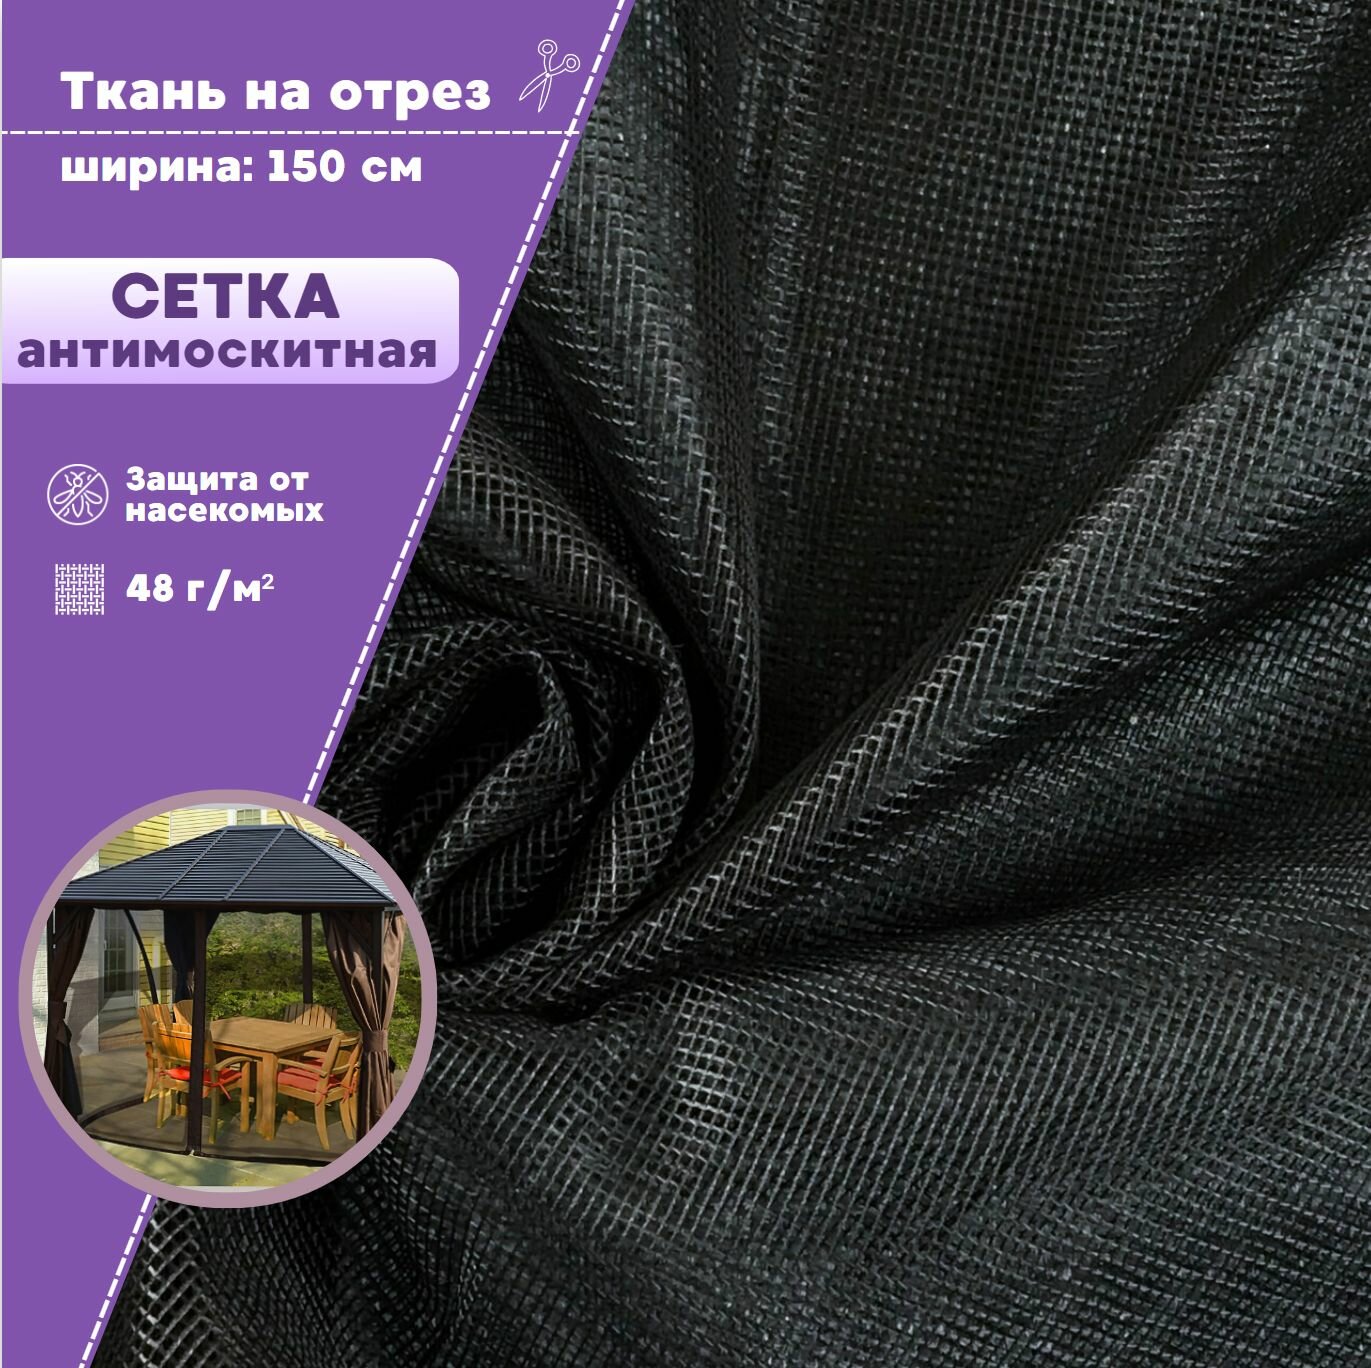 Ткань Сетка Антимоскитная мягкая полиэфирная для шатров и беседок, цв. черный, пл. 48 г/м2, ш-150 см, на отрез, цена за пог. метр